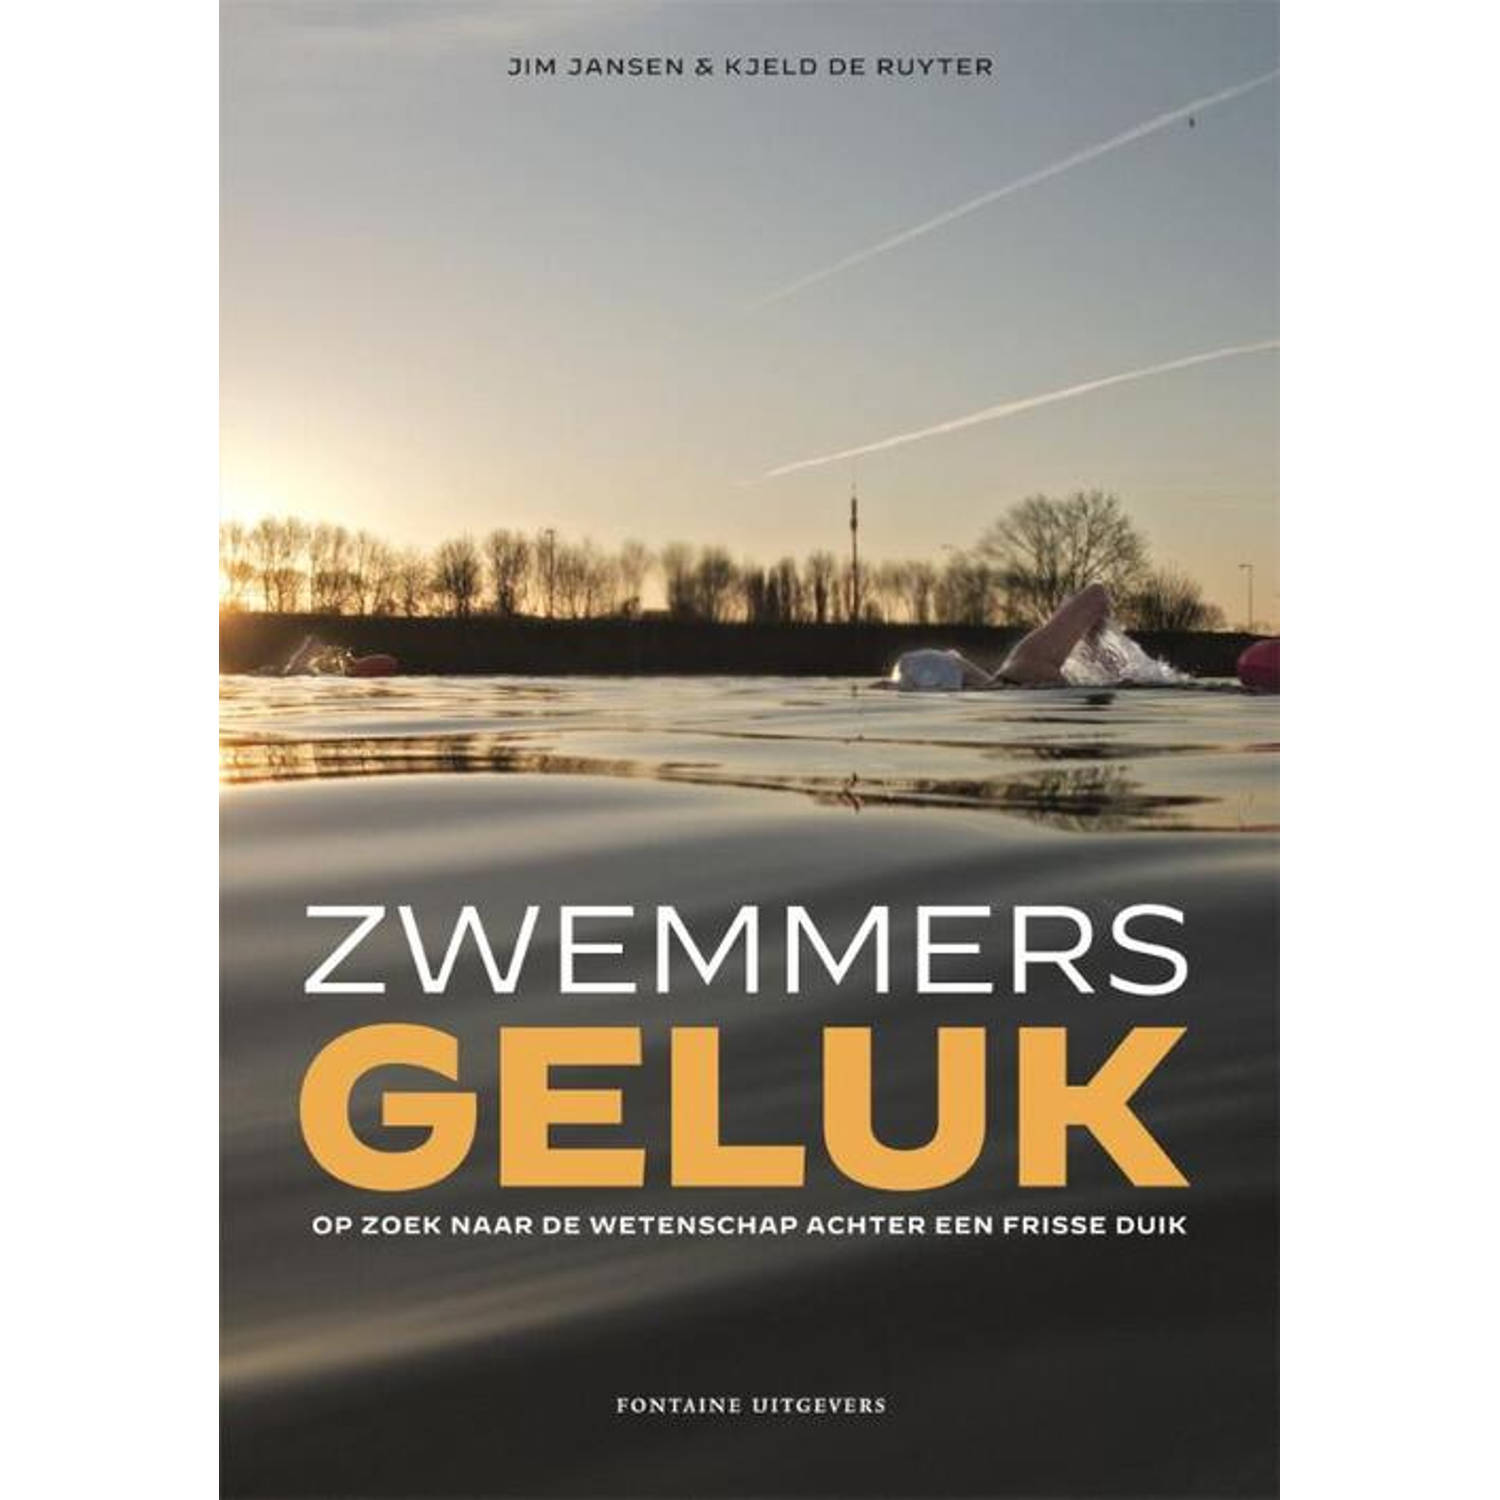 Zwemmersgeluk - (ISBN:9789464041019)